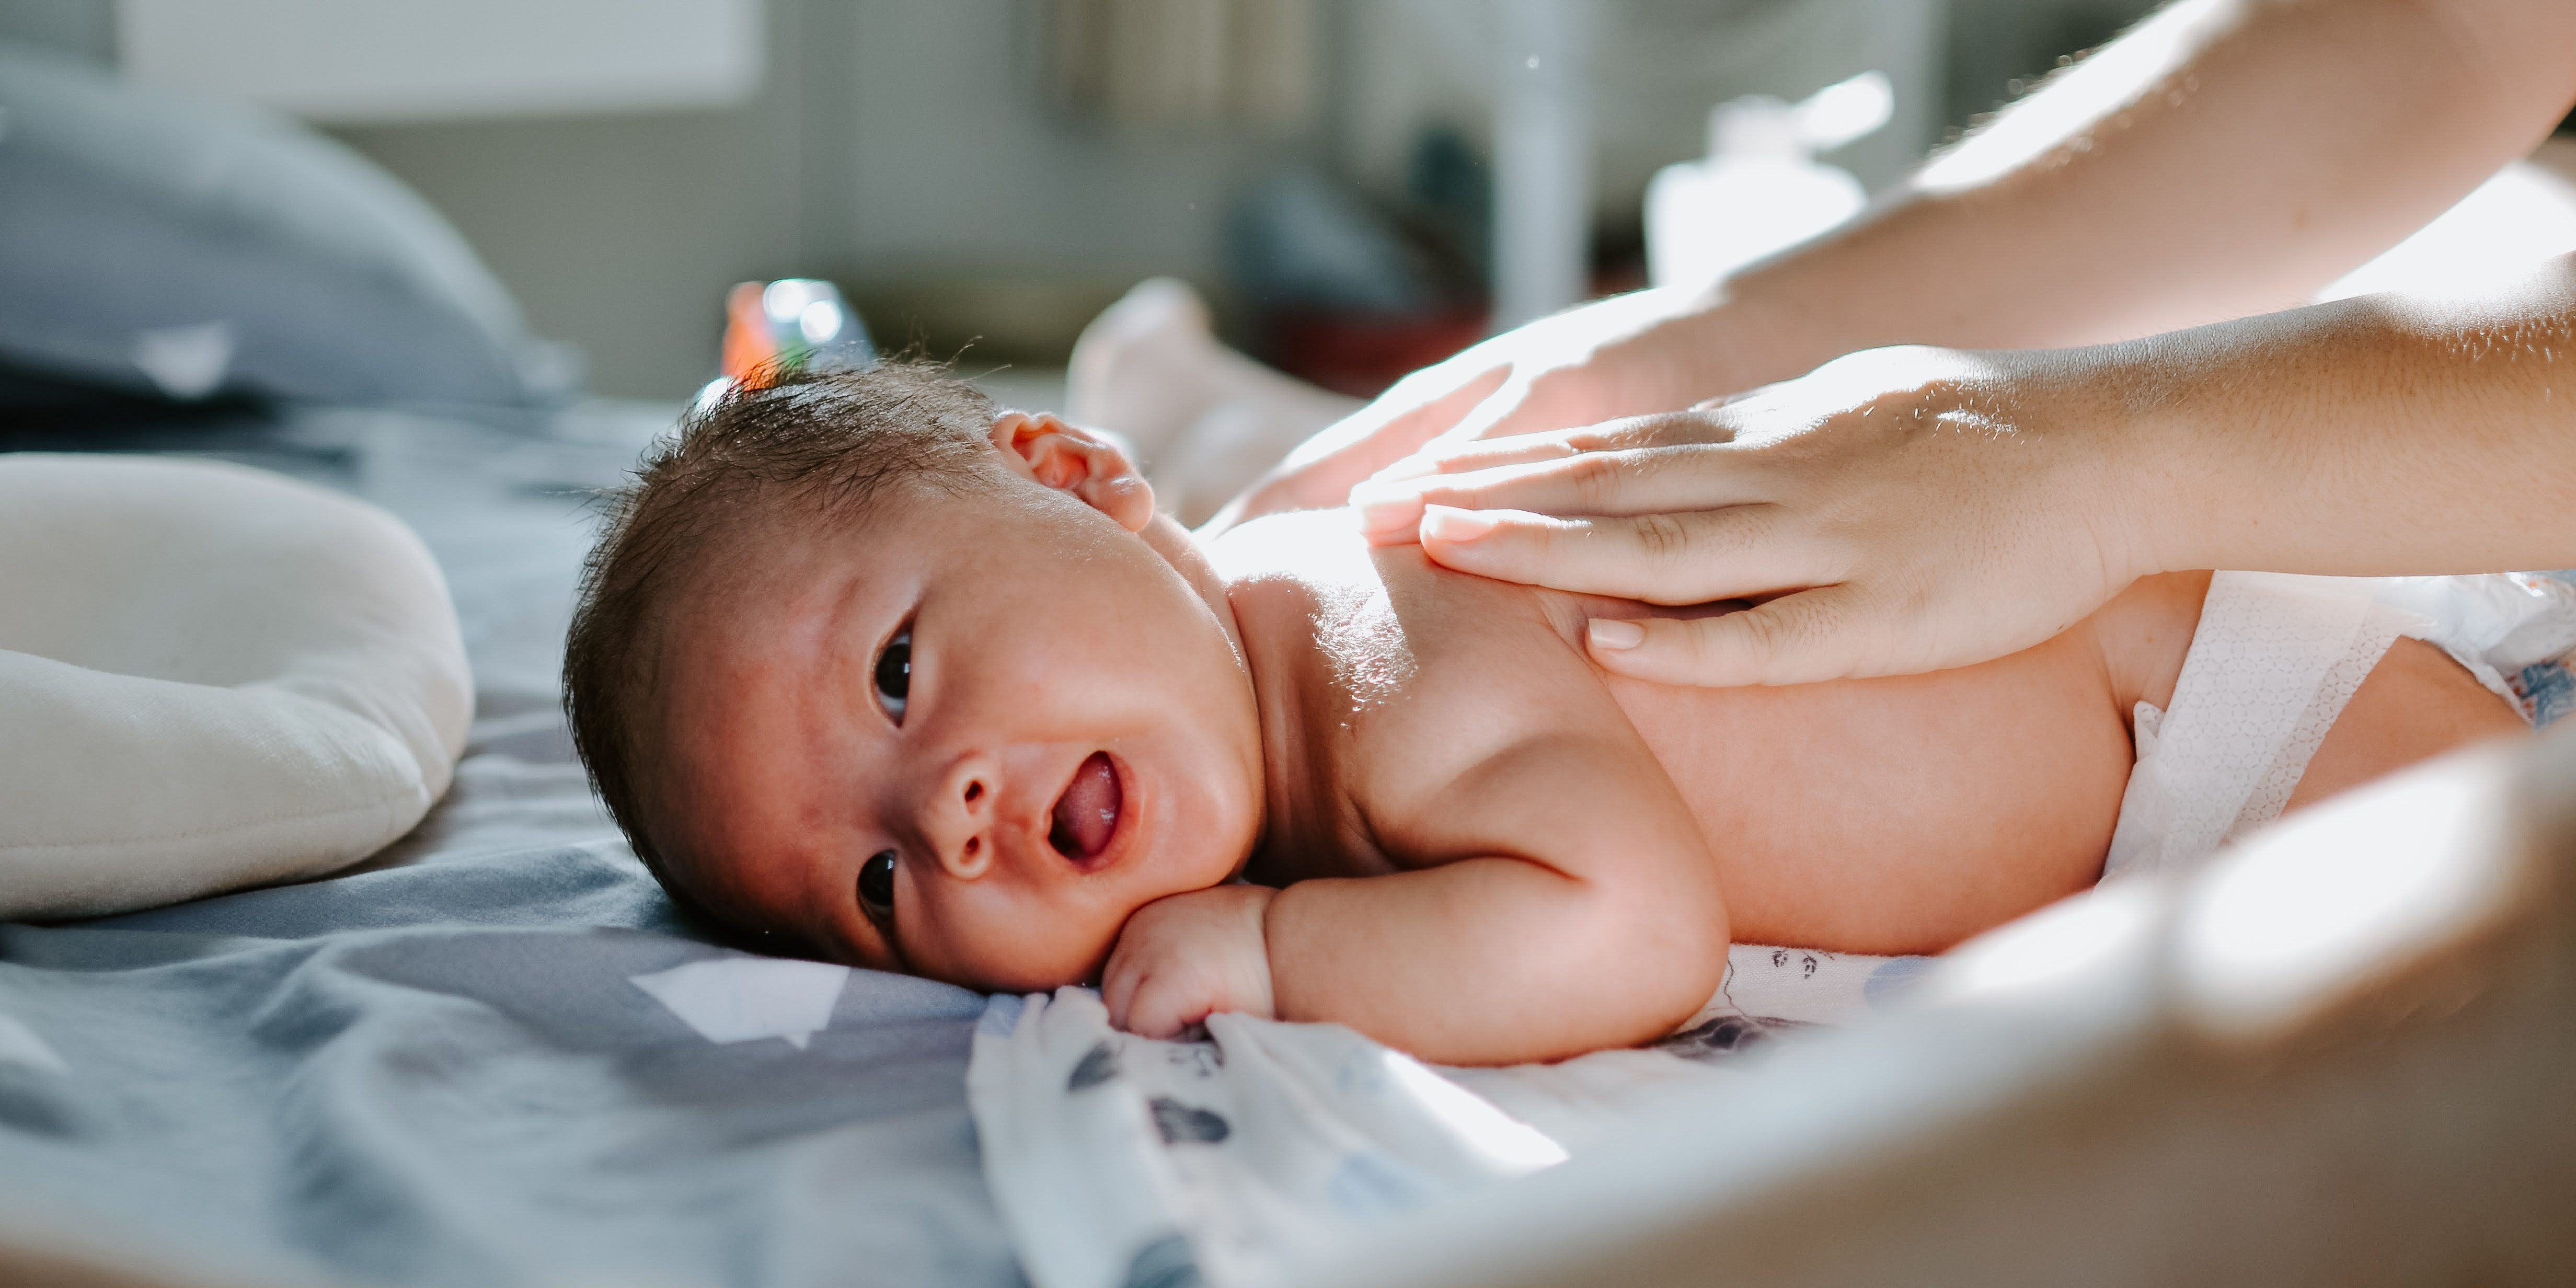 Нарушения мышечного тонуса у новорожденных